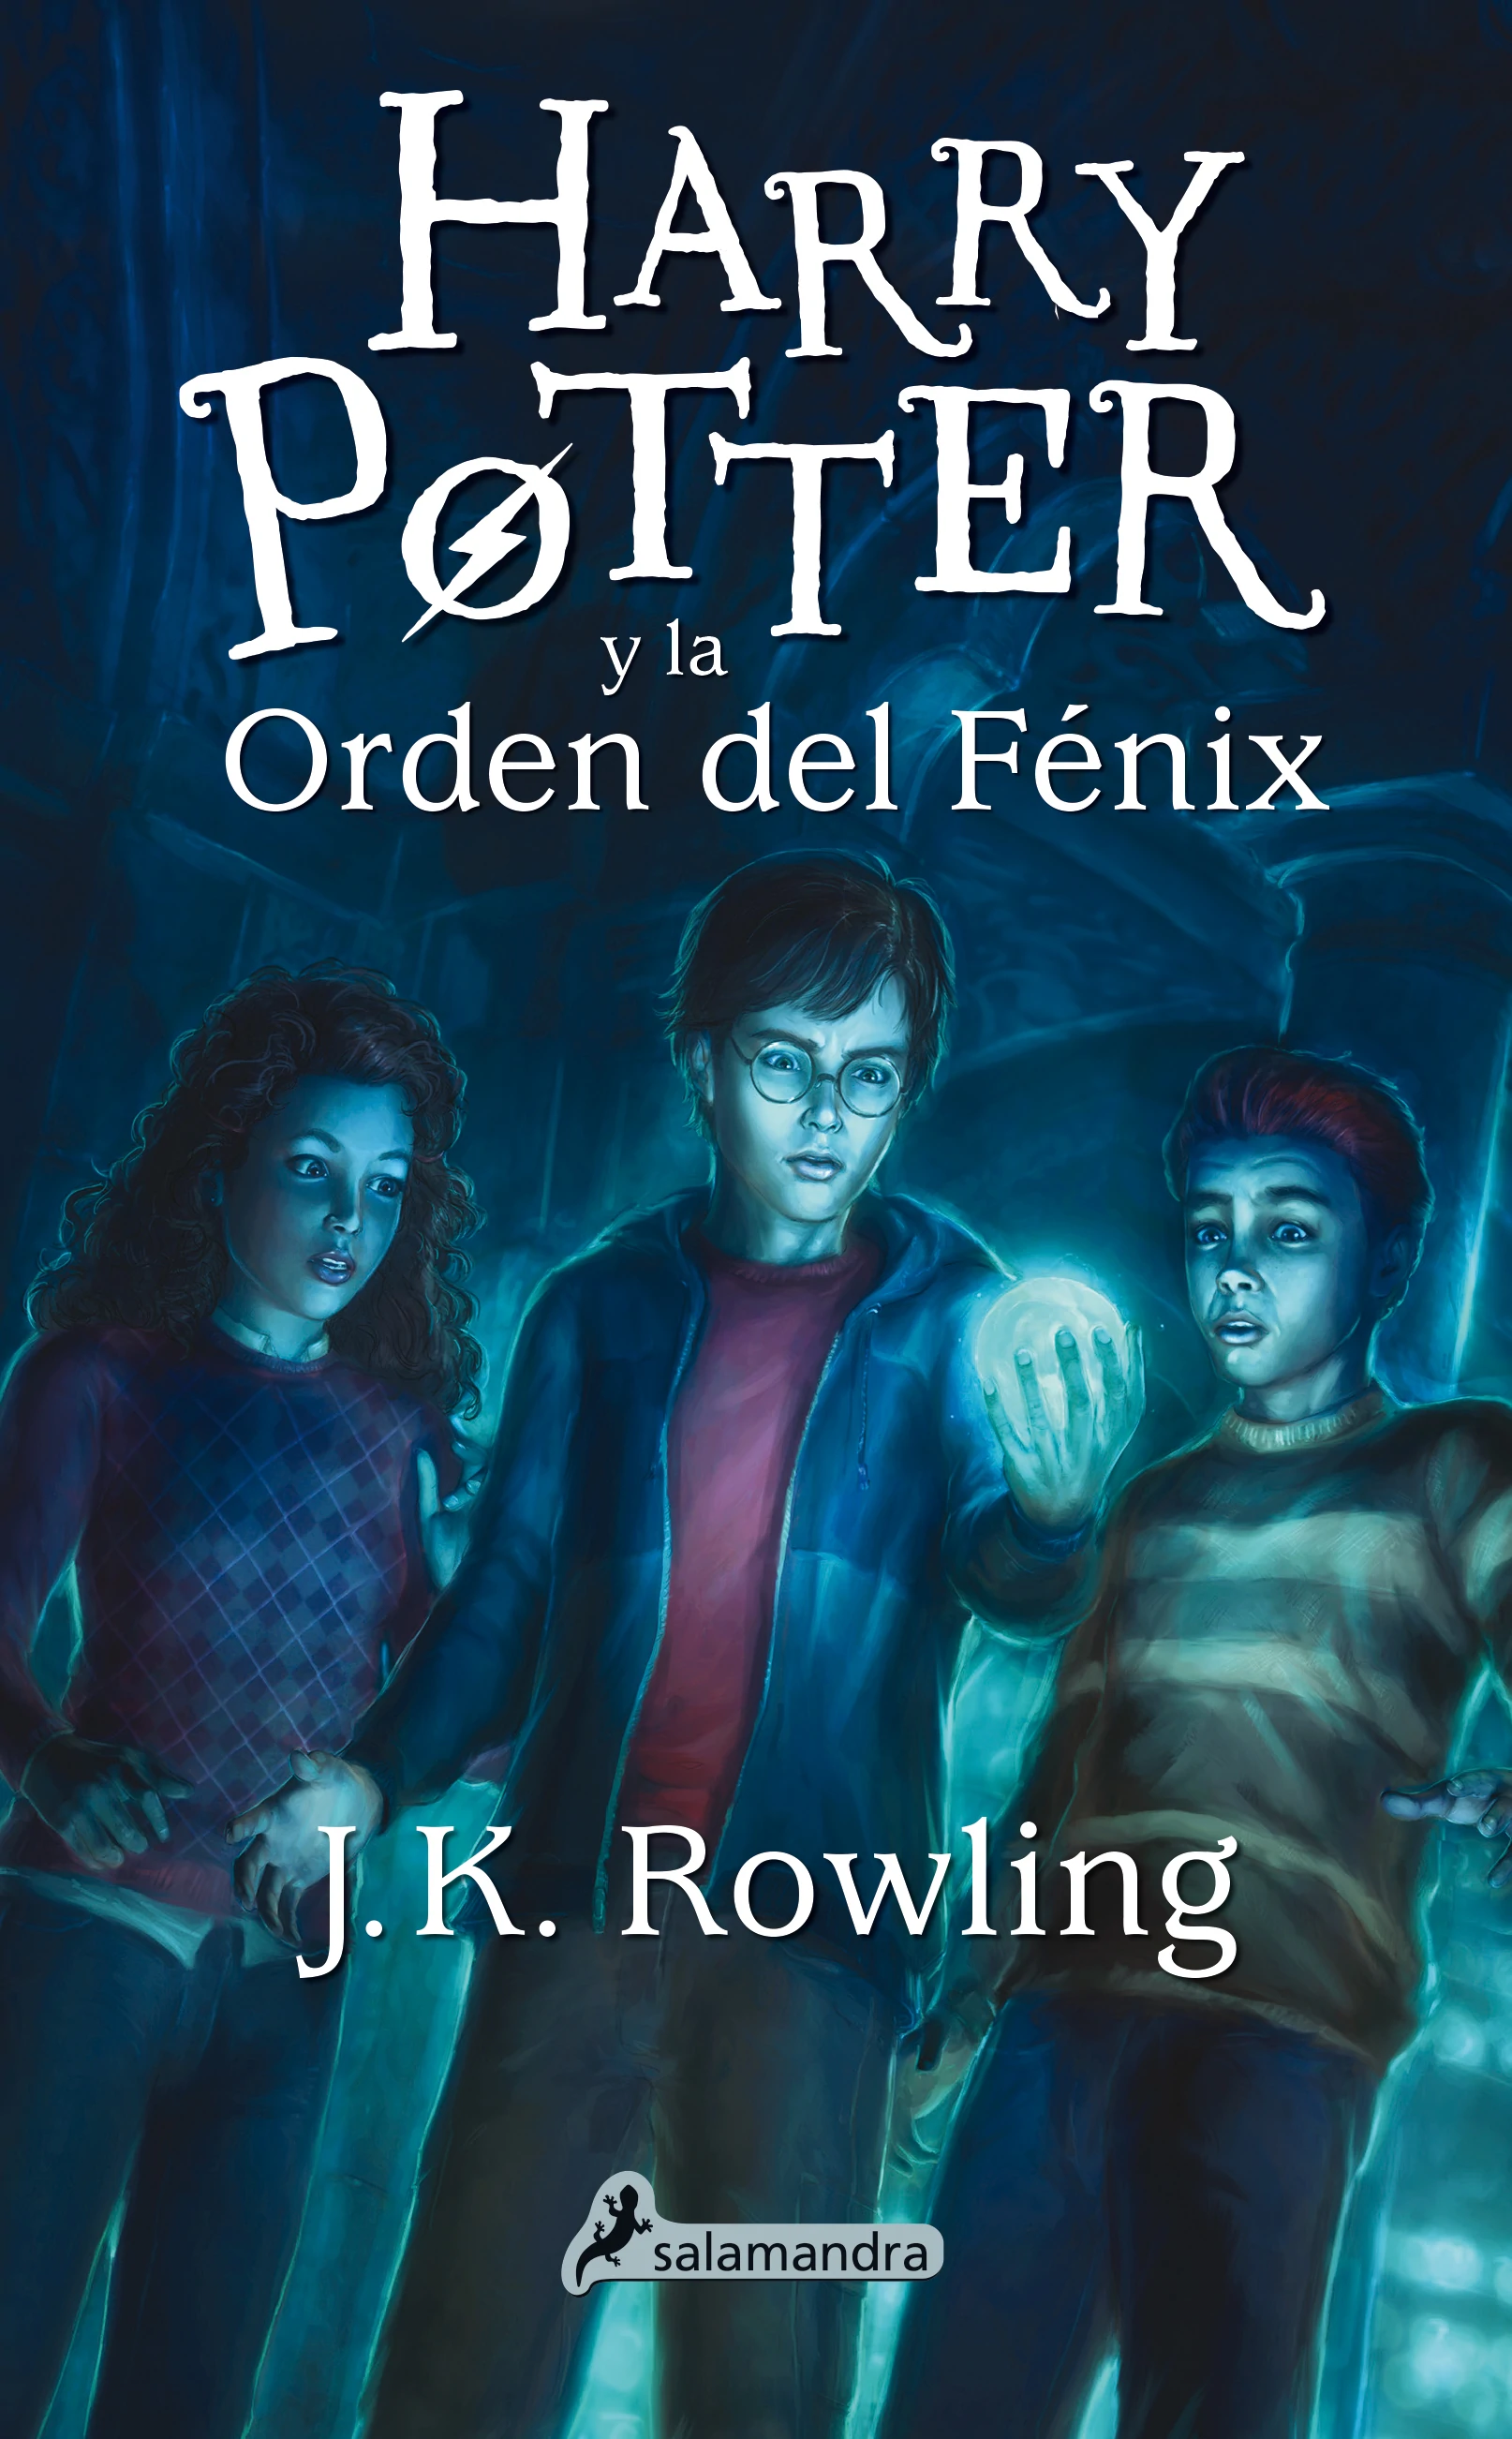 Harry Potter y la Orden del Fenix Nueva portada, tapa blanda